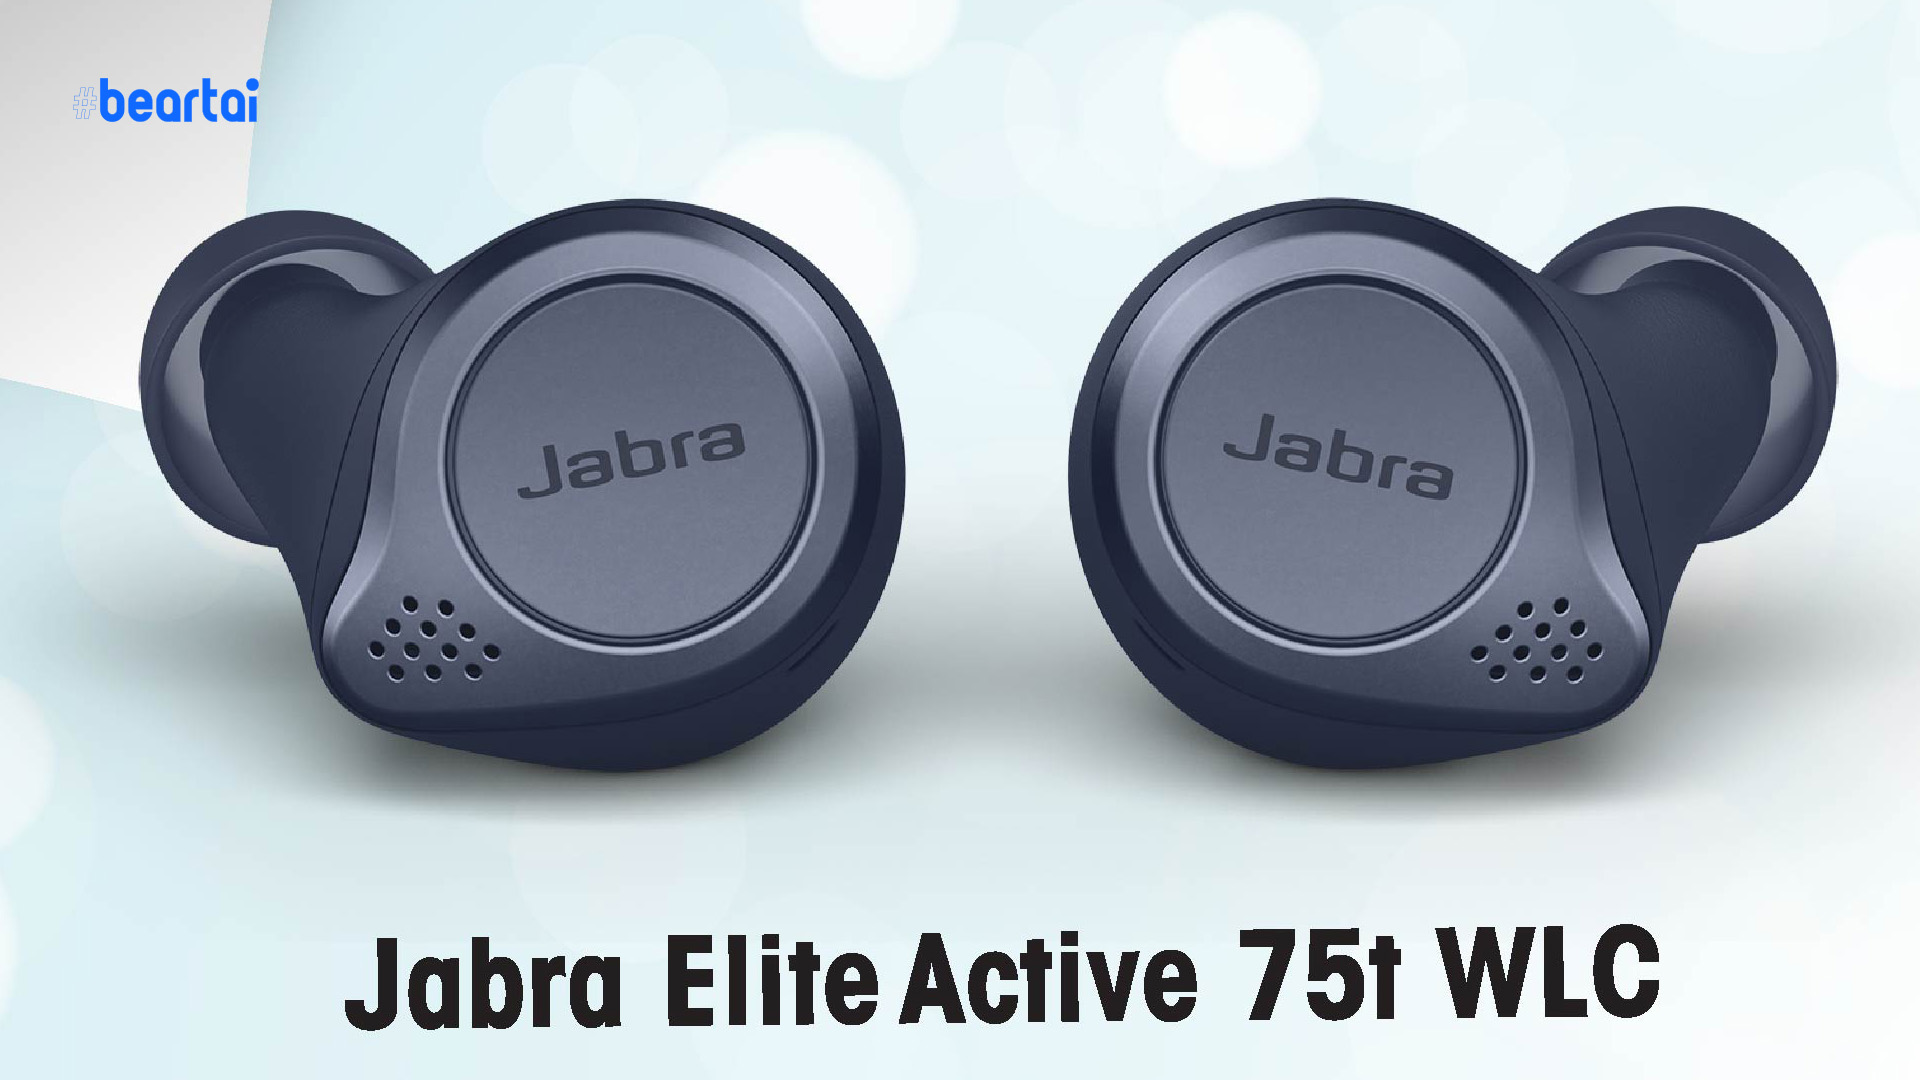 เปิดตัวหูฟัง Jabra Elite 75t WLC และ Jabra Elite Active 75t WLC ภายใต้คอนเซ็ปต์ “อิสระไร้สาย ห่างไกลไวรัส”